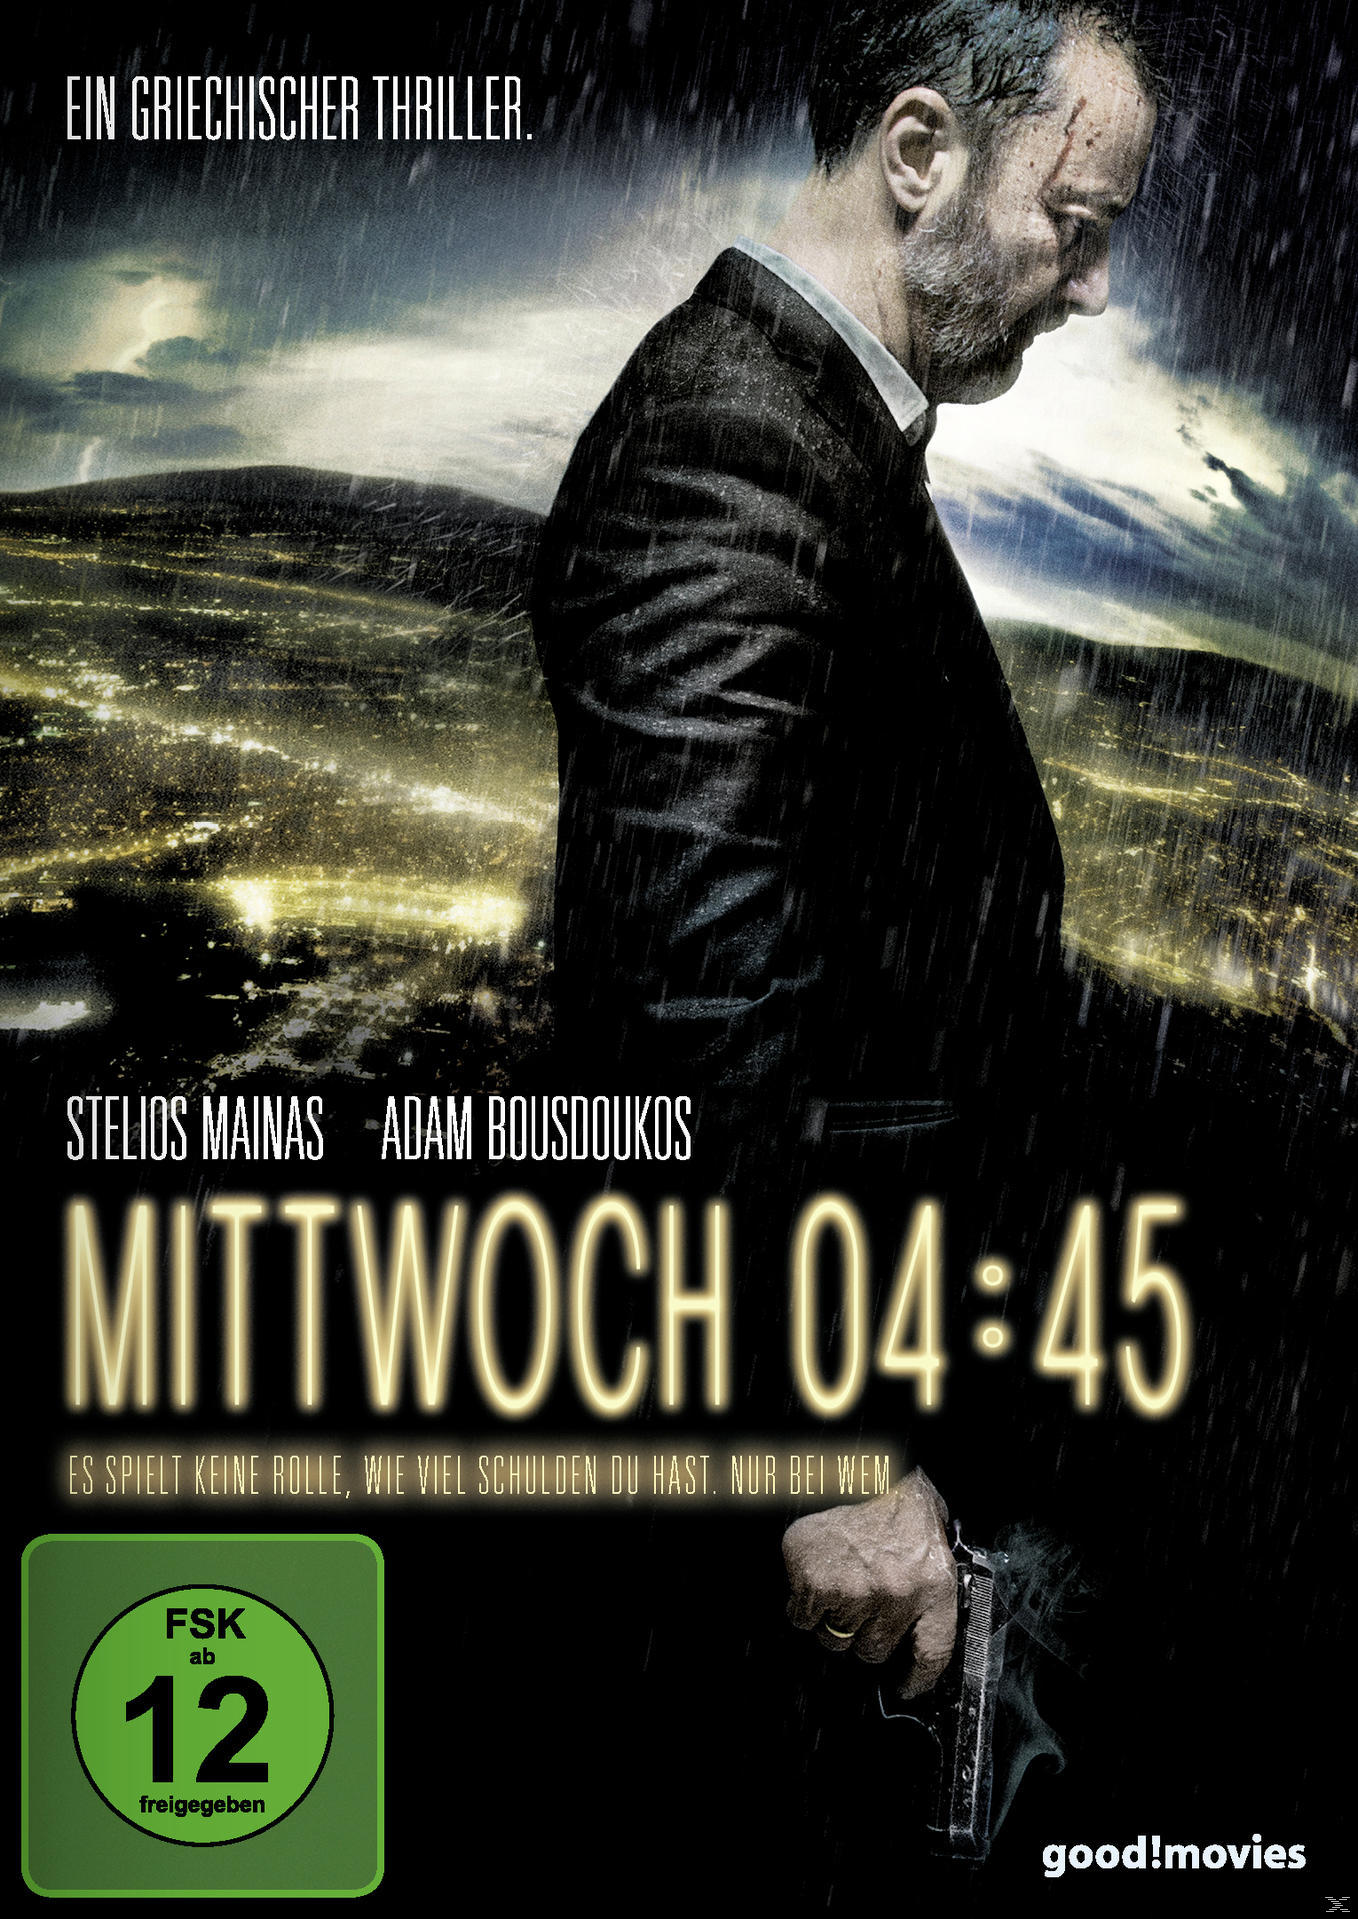 04:45 Mittwoch DVD